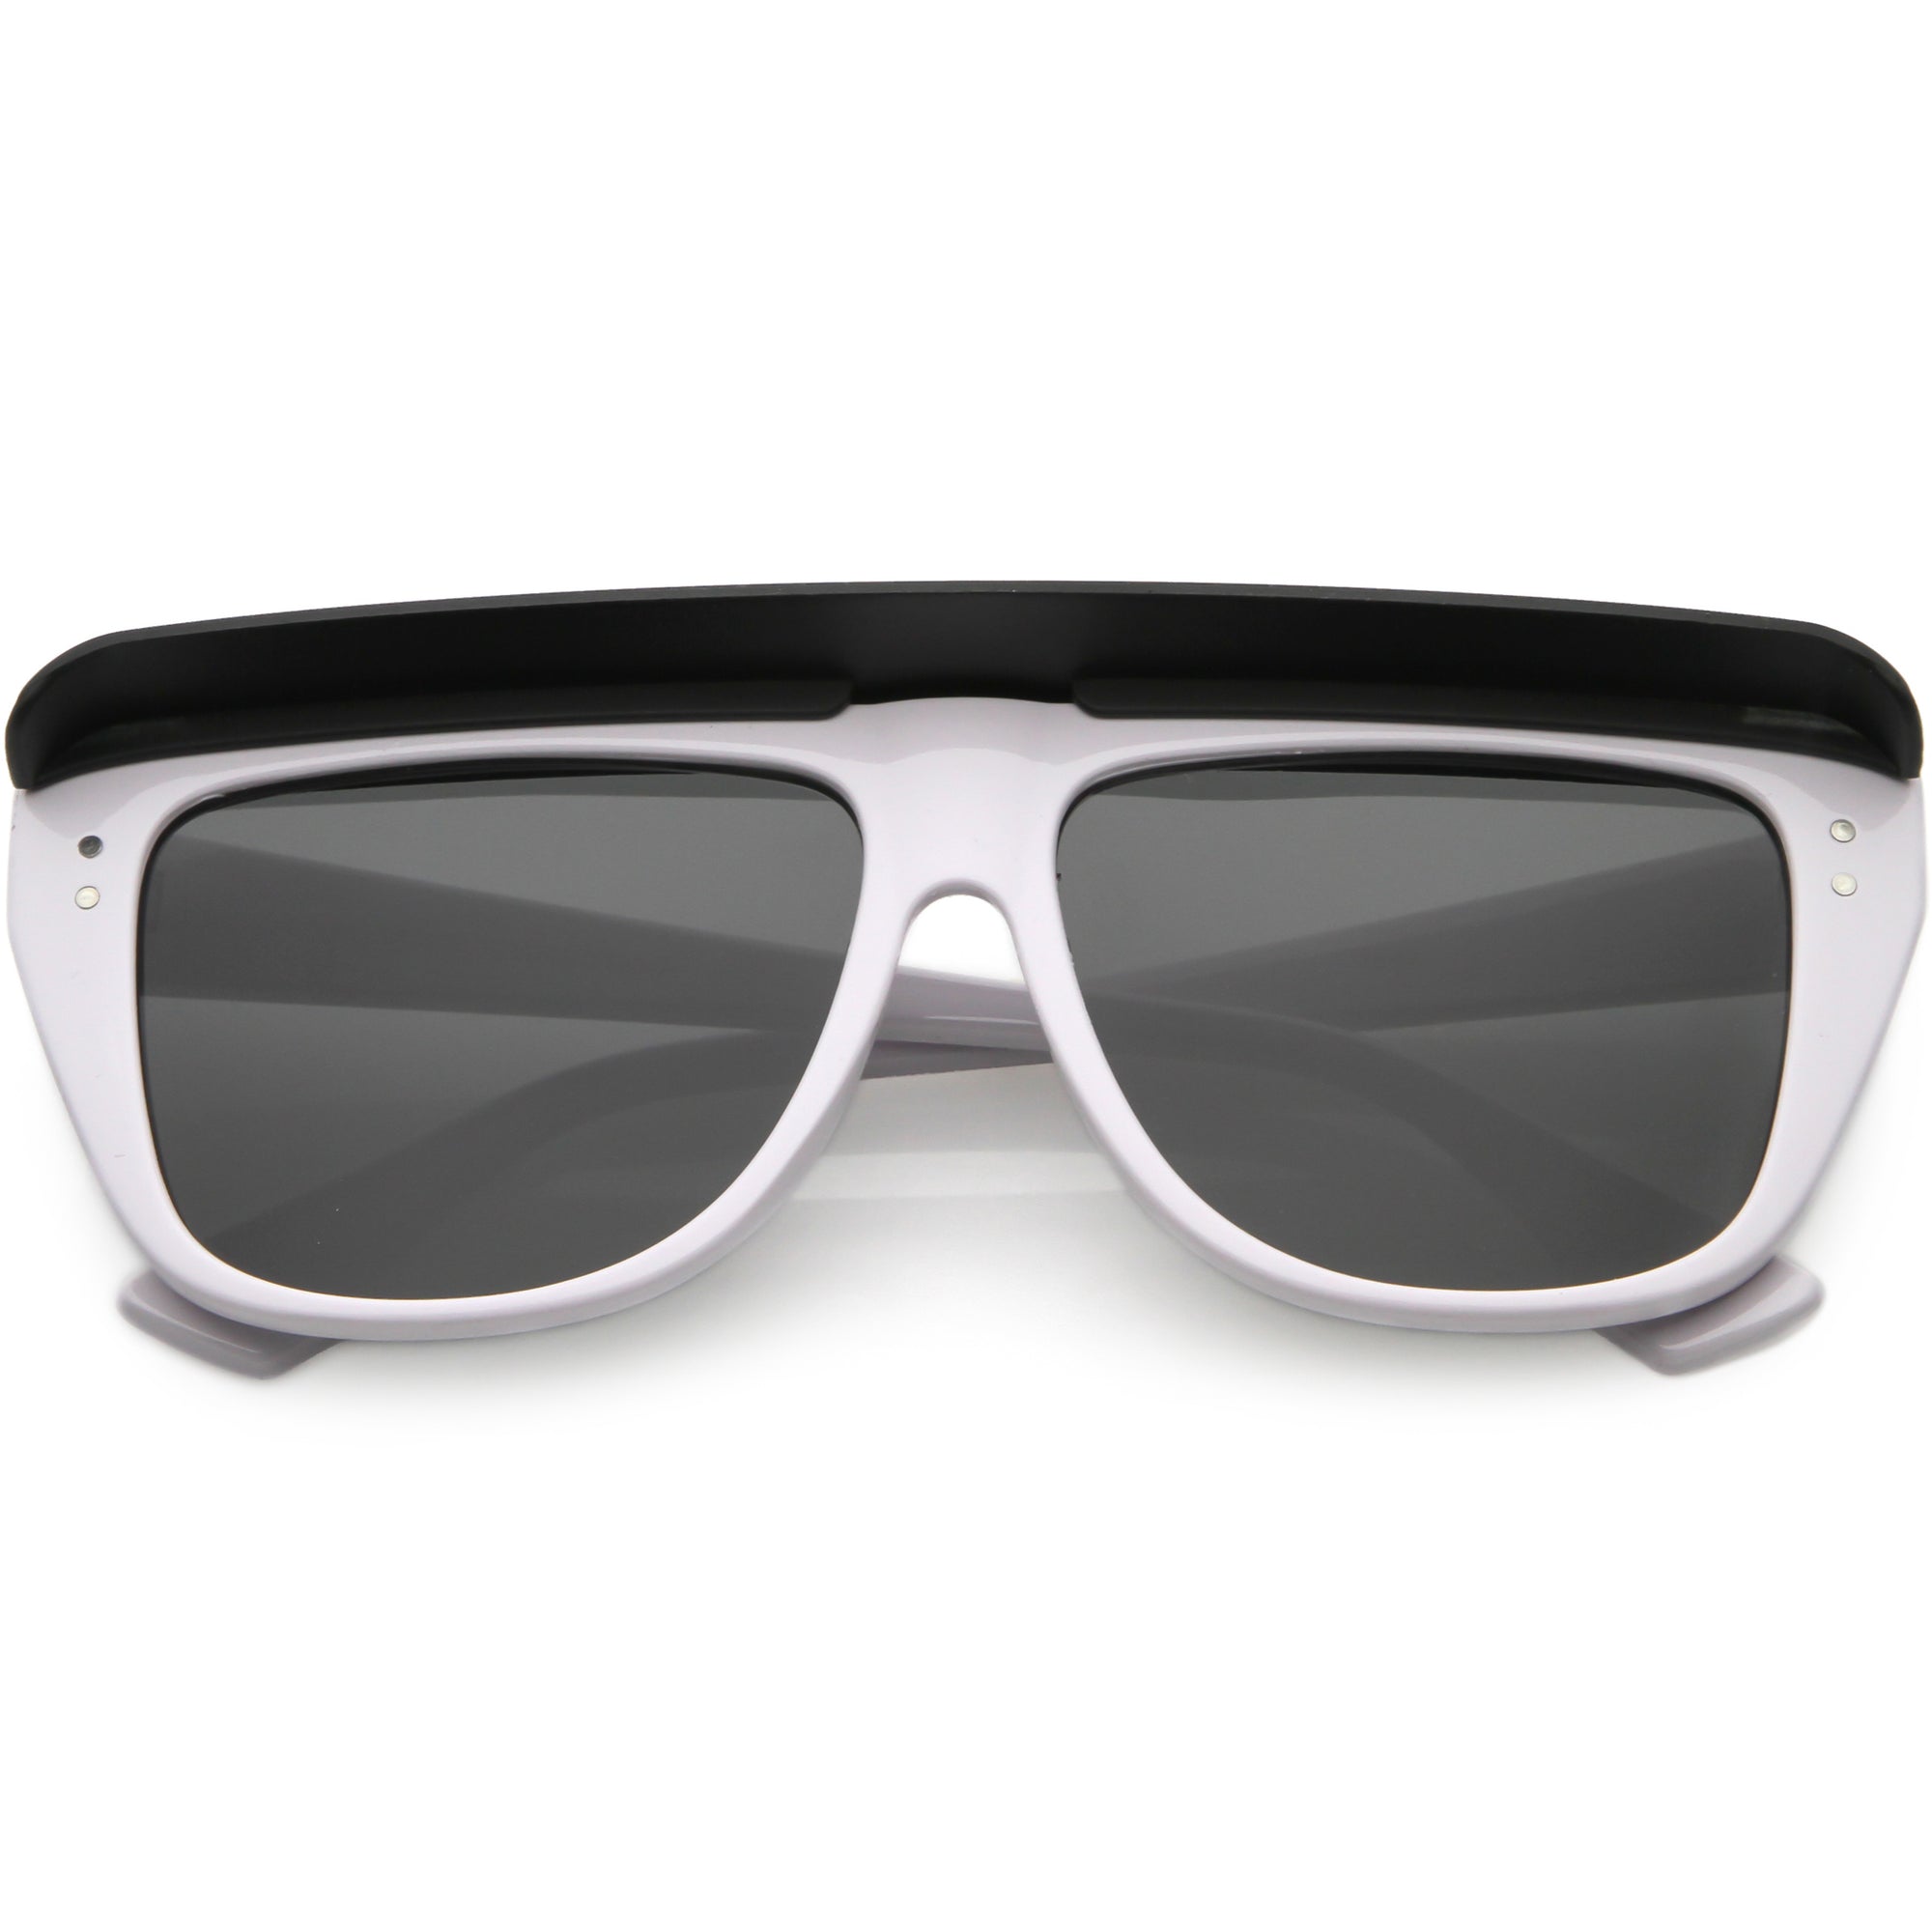 Redneck Visor Sunglasses - Spirithalloween.com